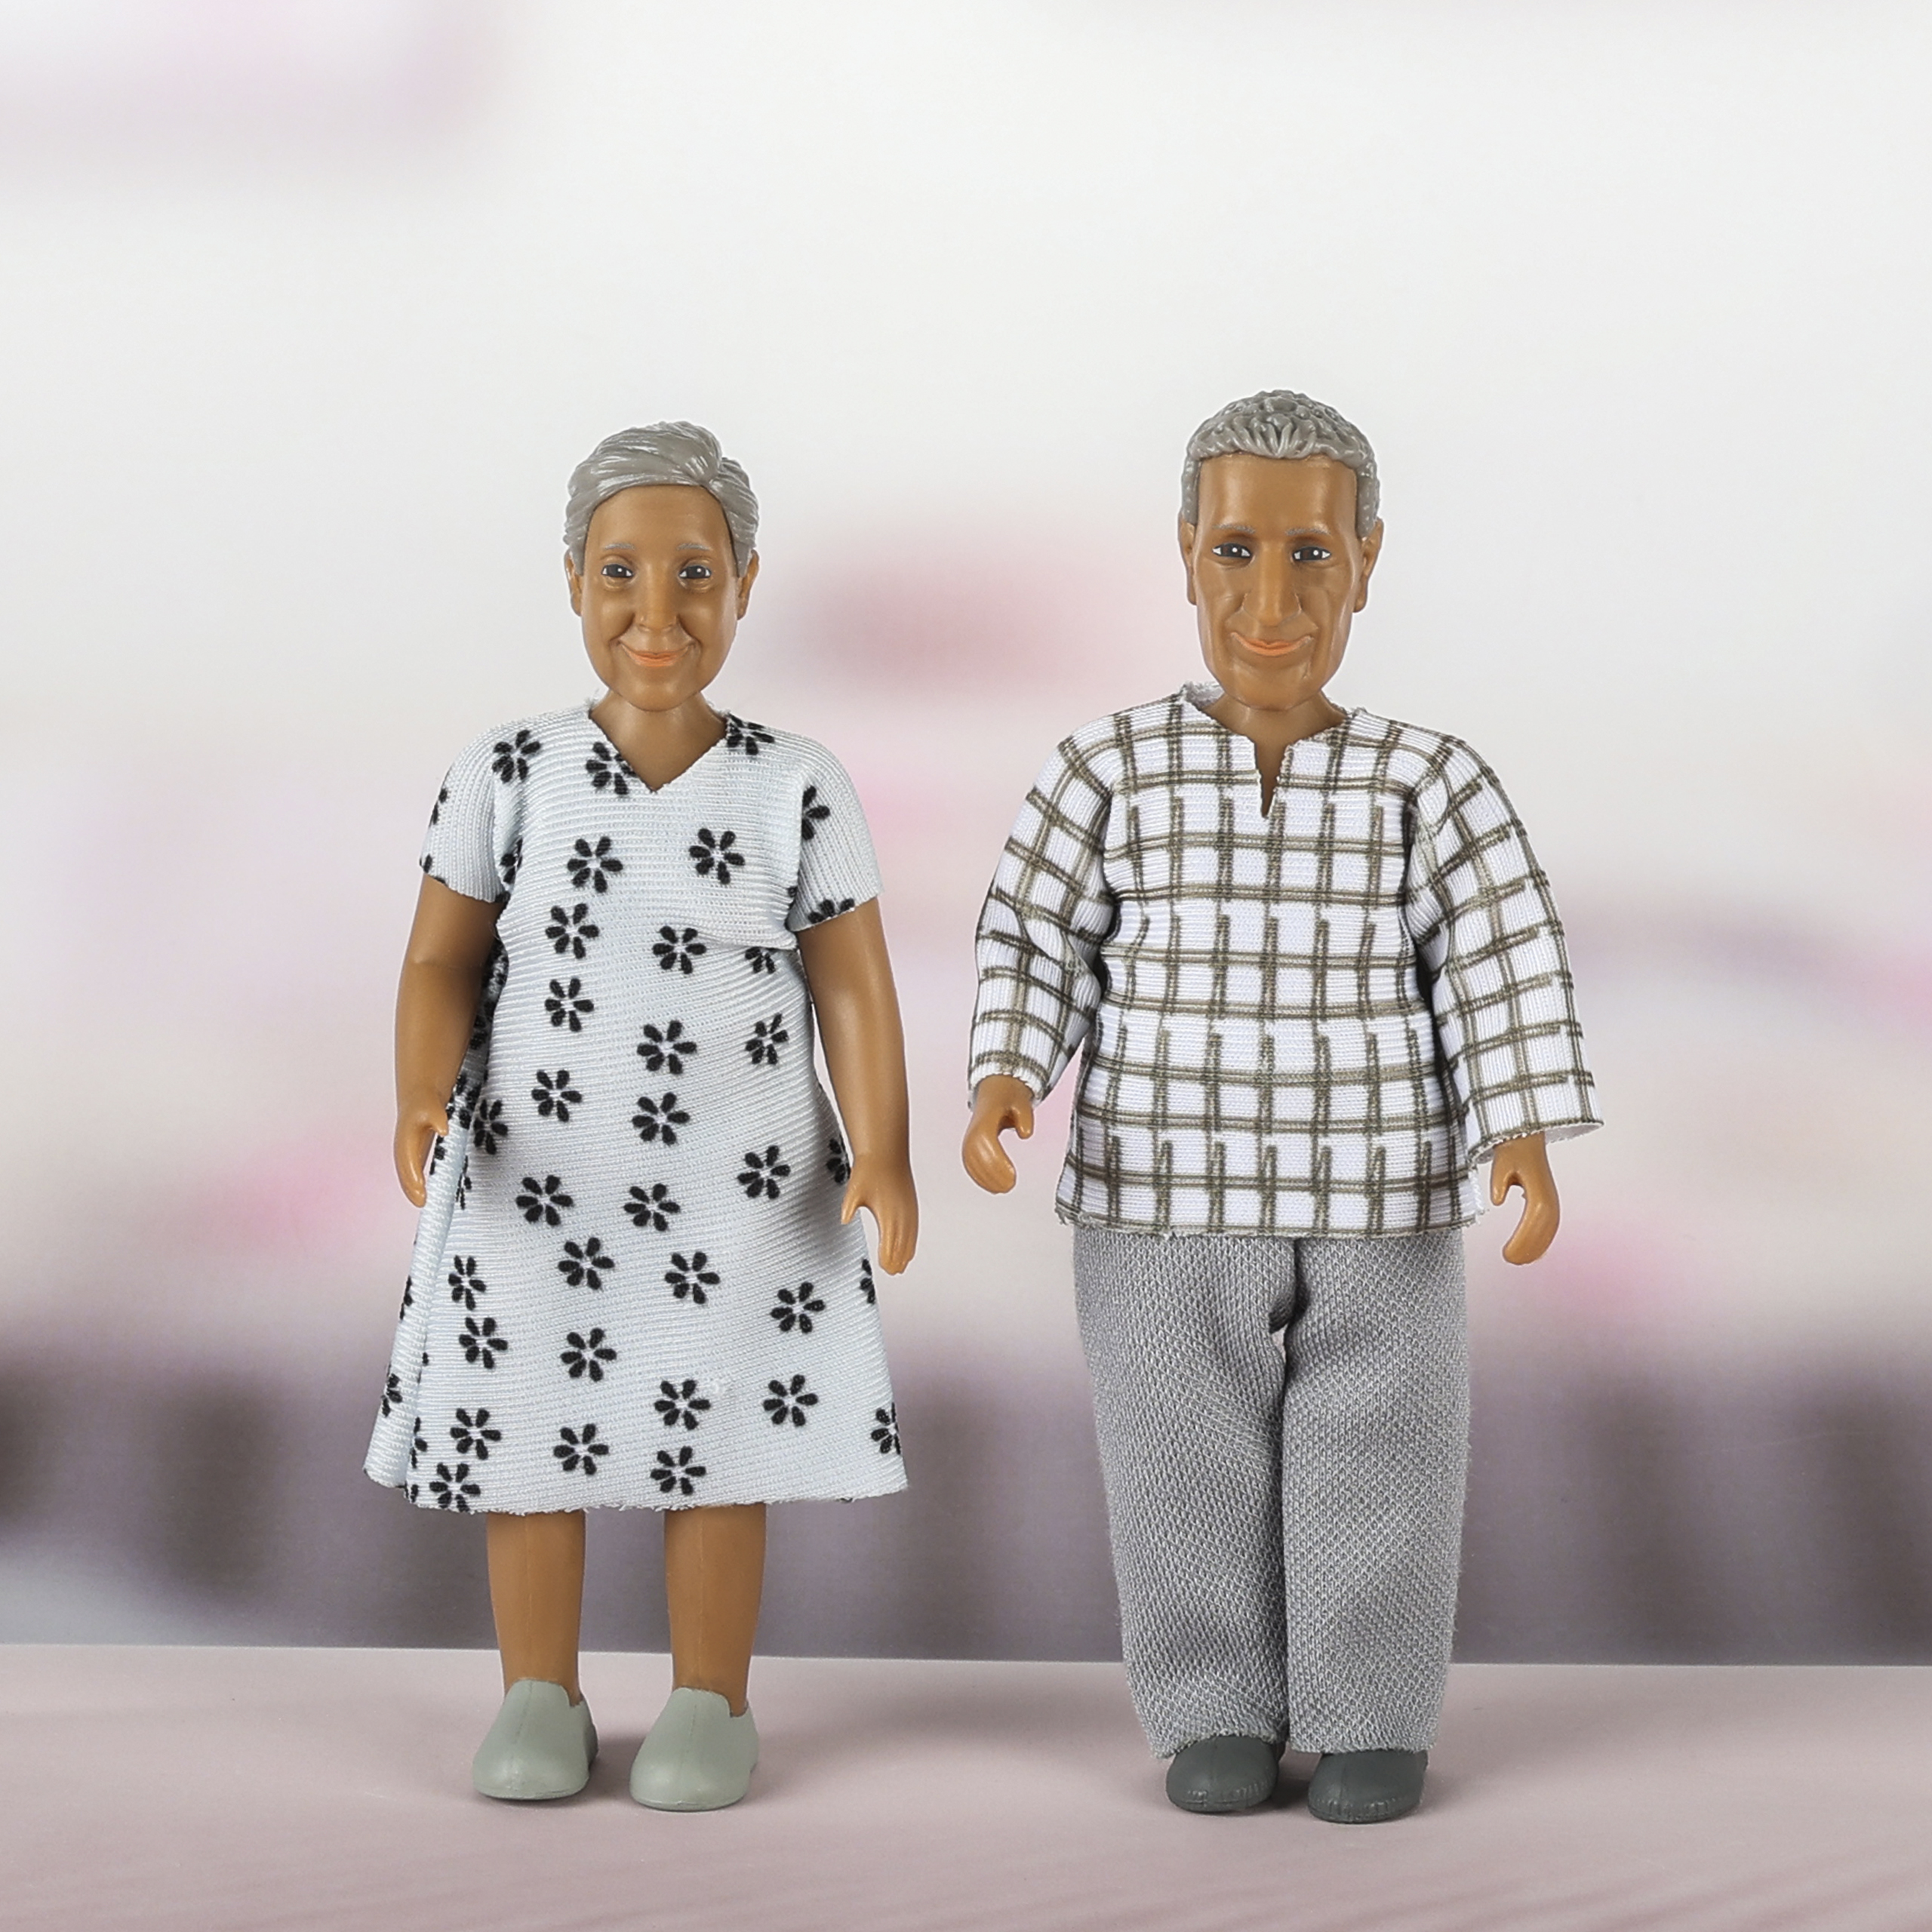 Dark-skinned dolls lundby	dollshouse dolls elderly couple nikki